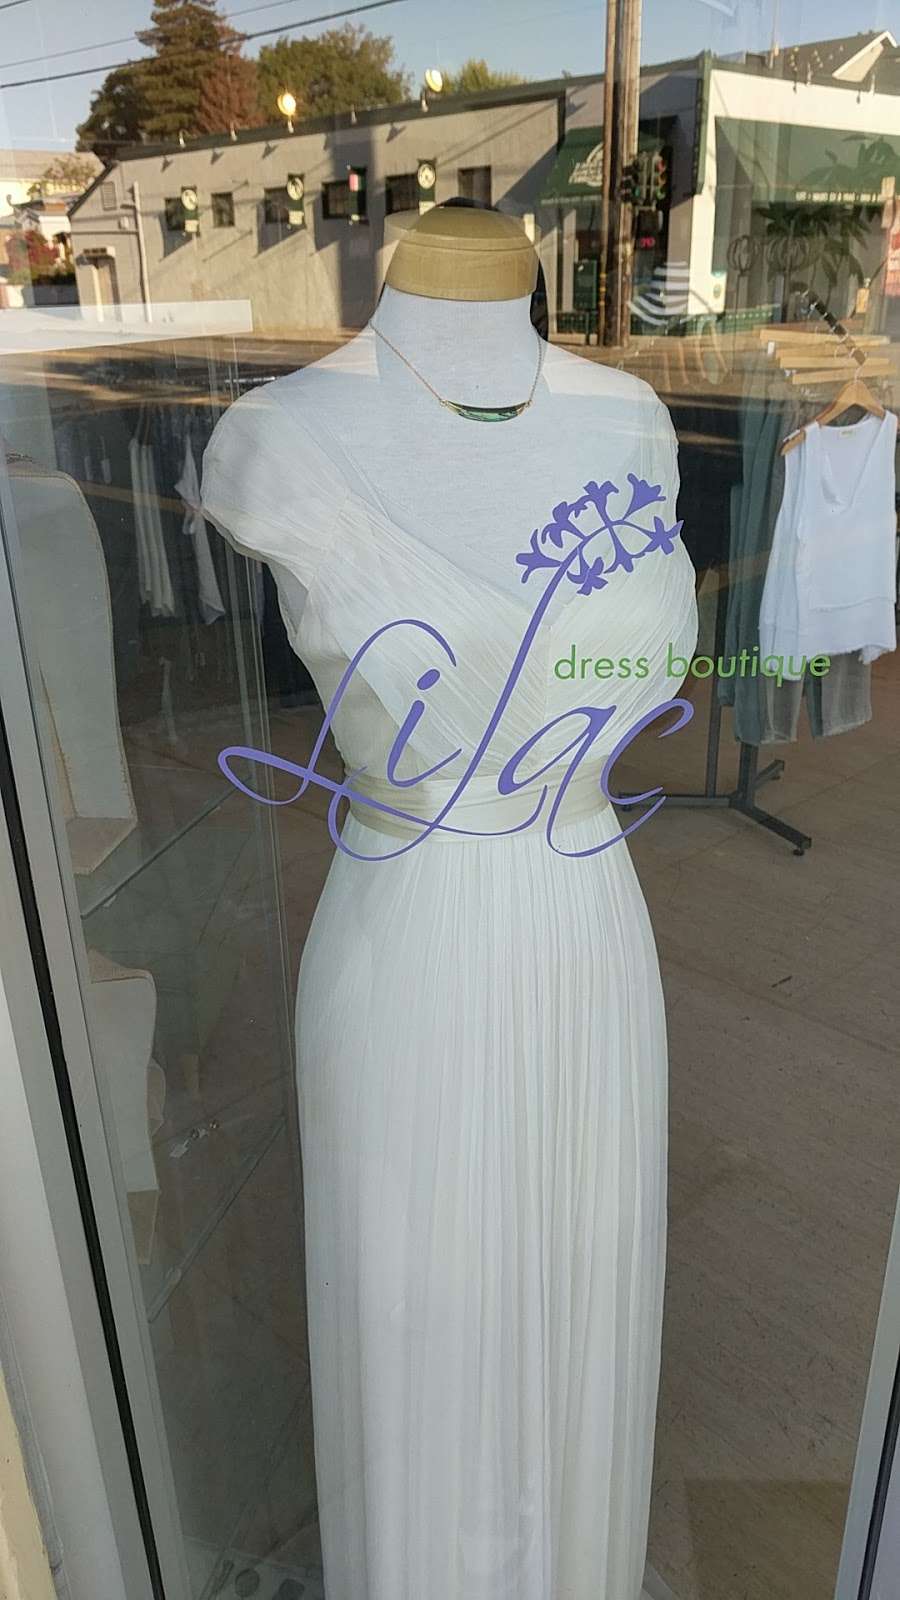 Lilac Dress Boutique | 1918 Encinal Ave, Alameda, CA 94501, USA | Phone: (510) 865-2544